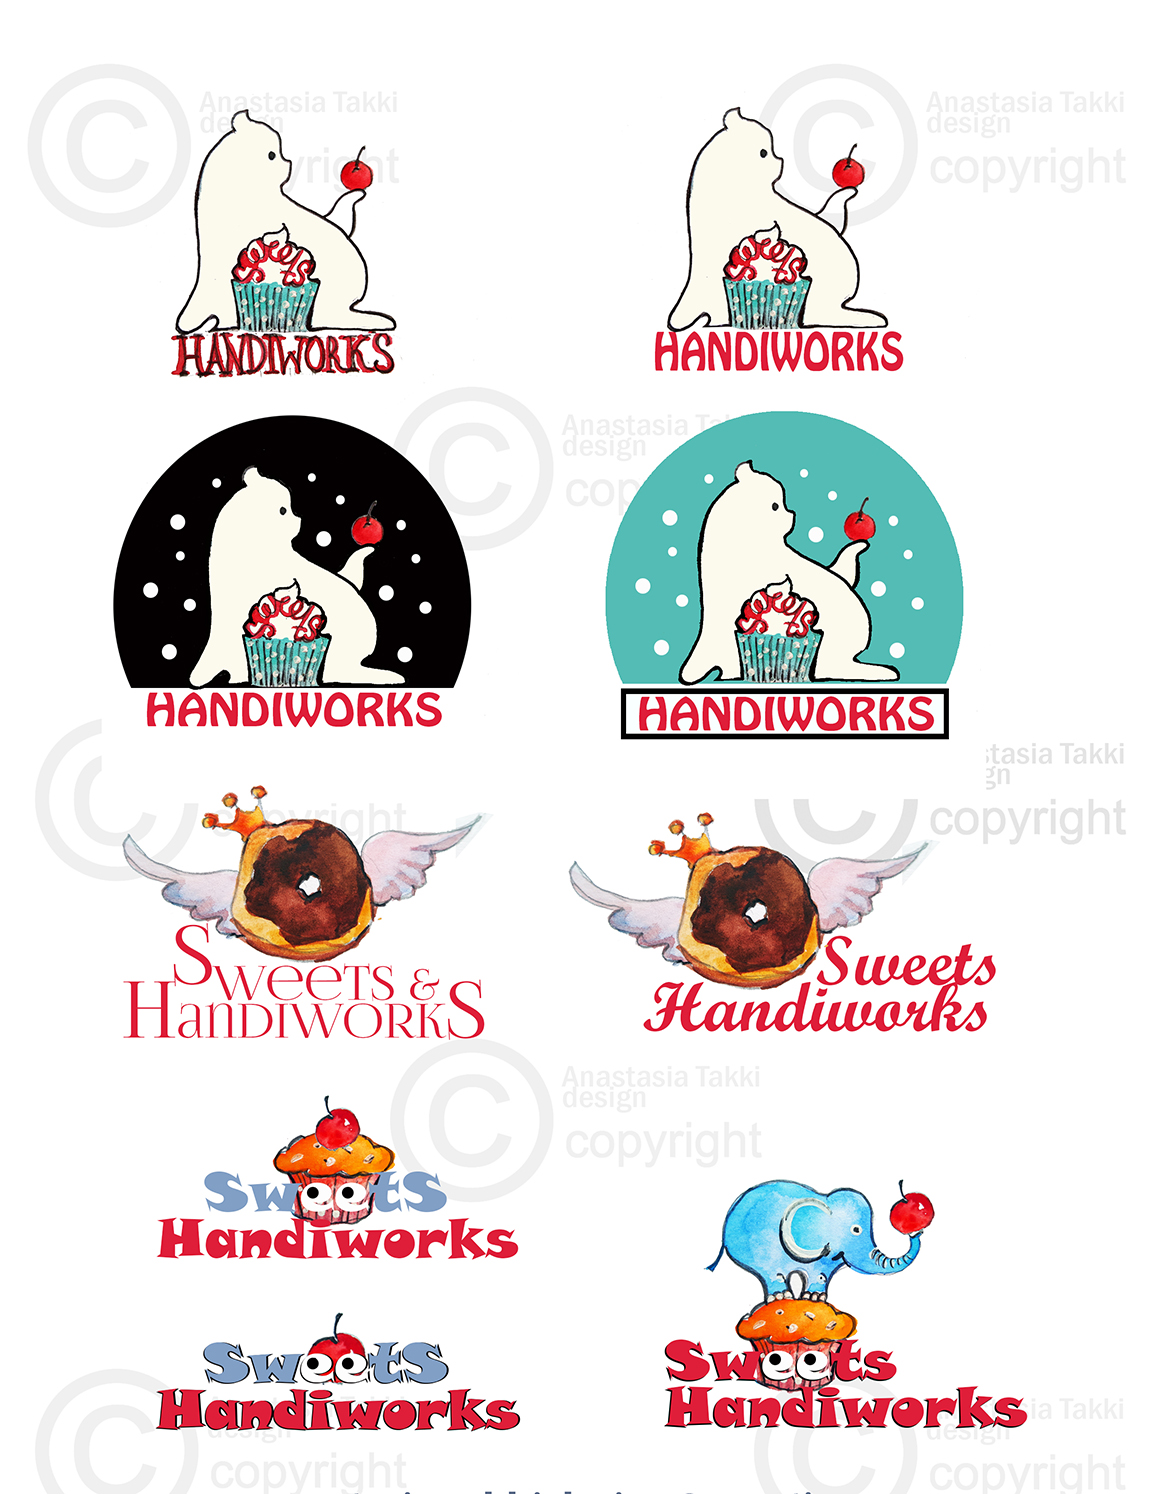 Sweethandiworks logo2 2